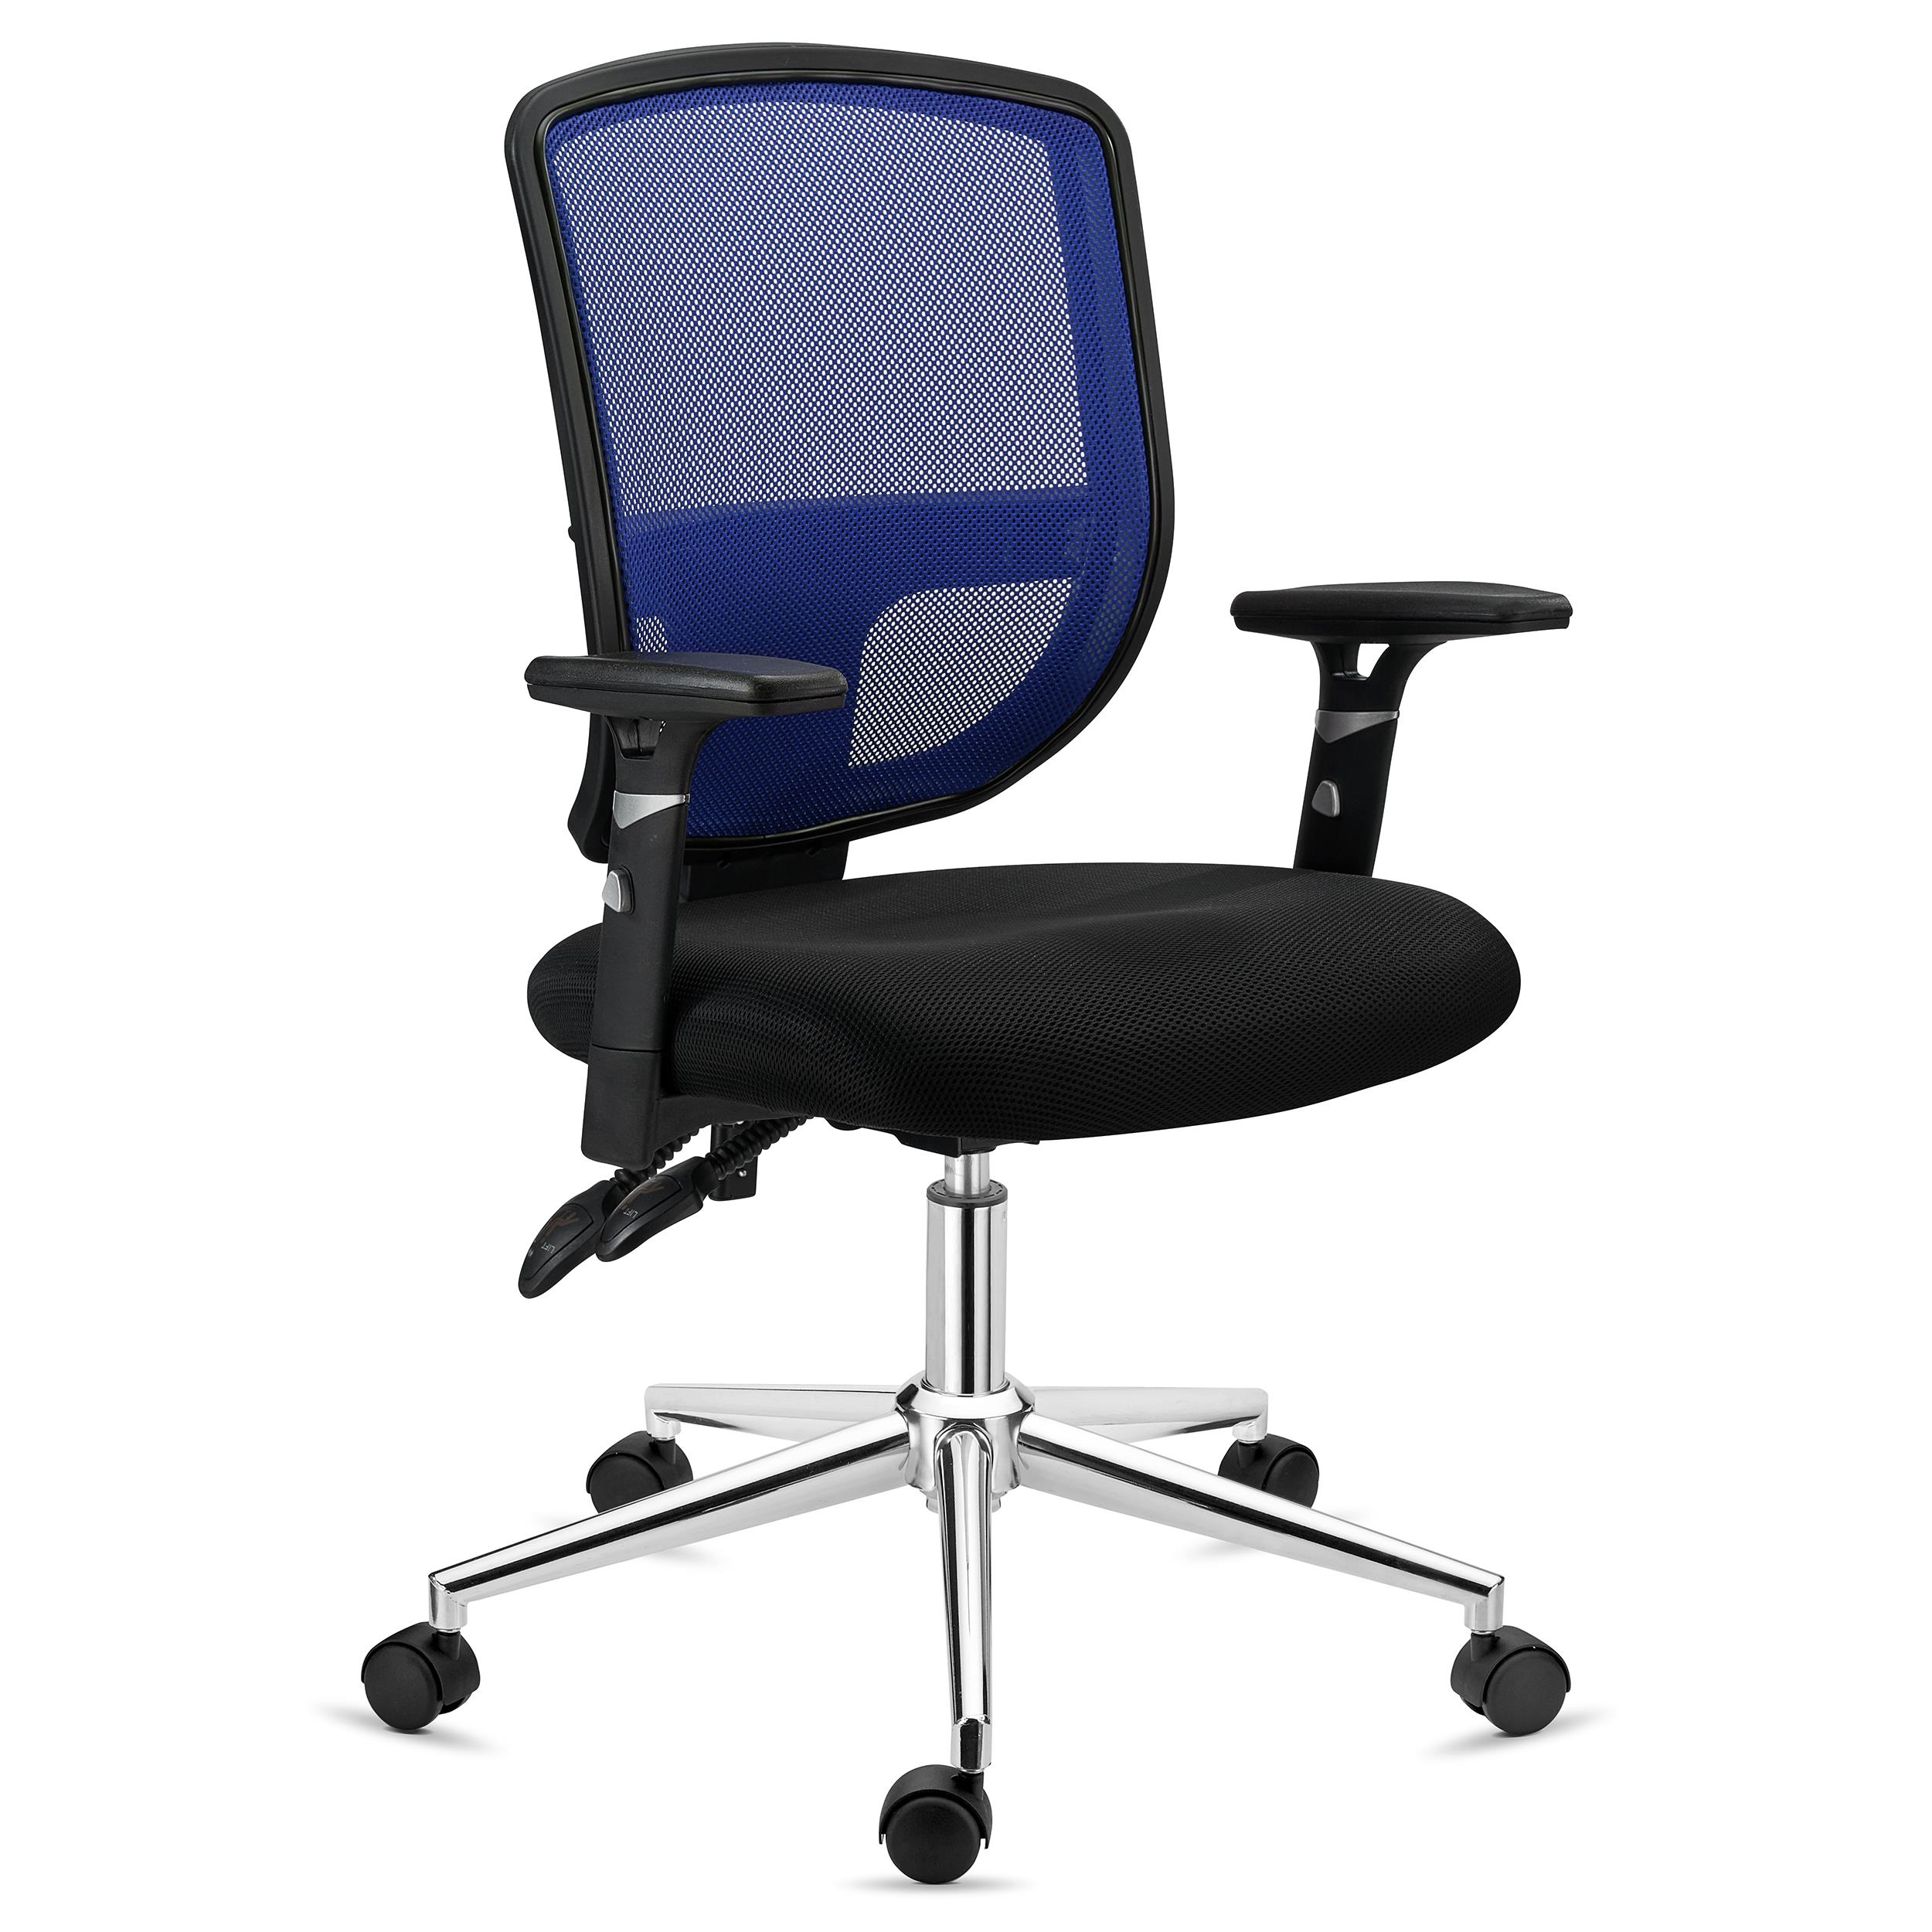 Bürostuhl DINAMIC, für die 8h-Nutzung, verstellbare Rückenlehne, bequem und robust, Farbe Blau